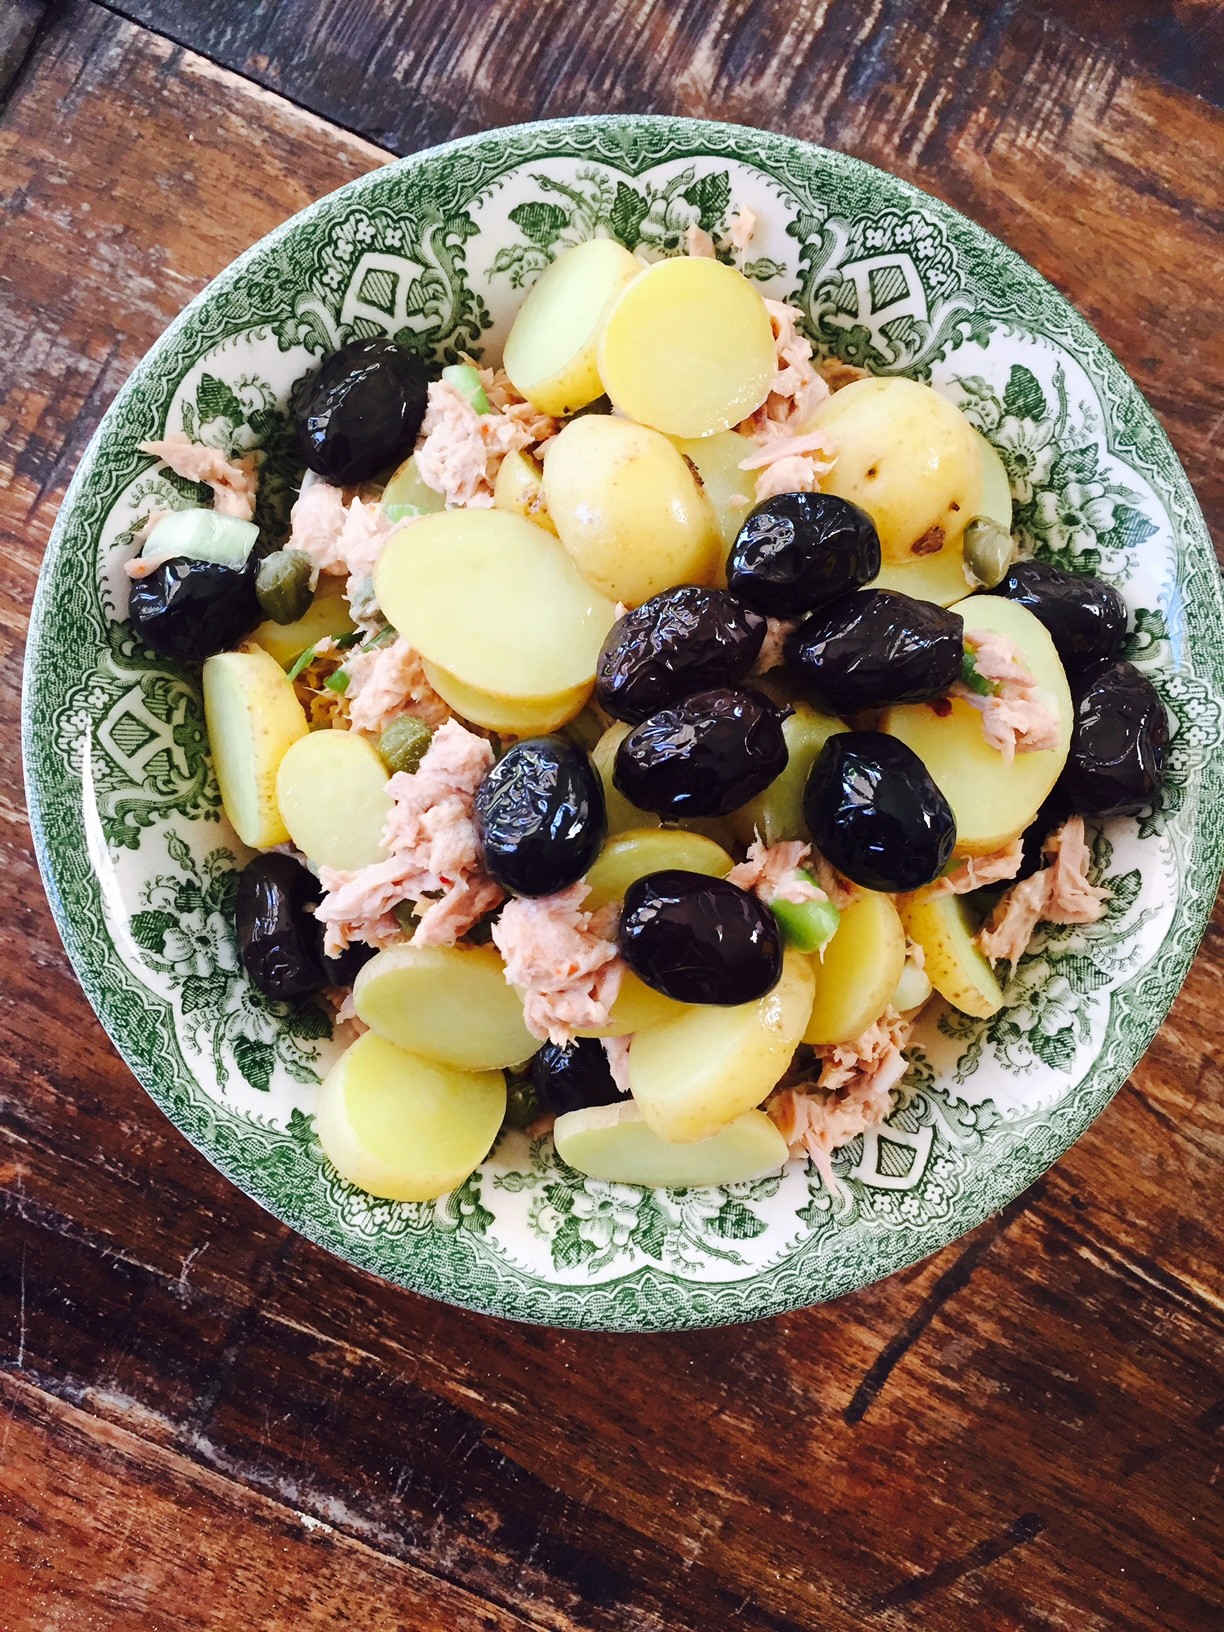 snelle recepten tonijnsalade met aardappeltjes recept van foodblog Foodinista